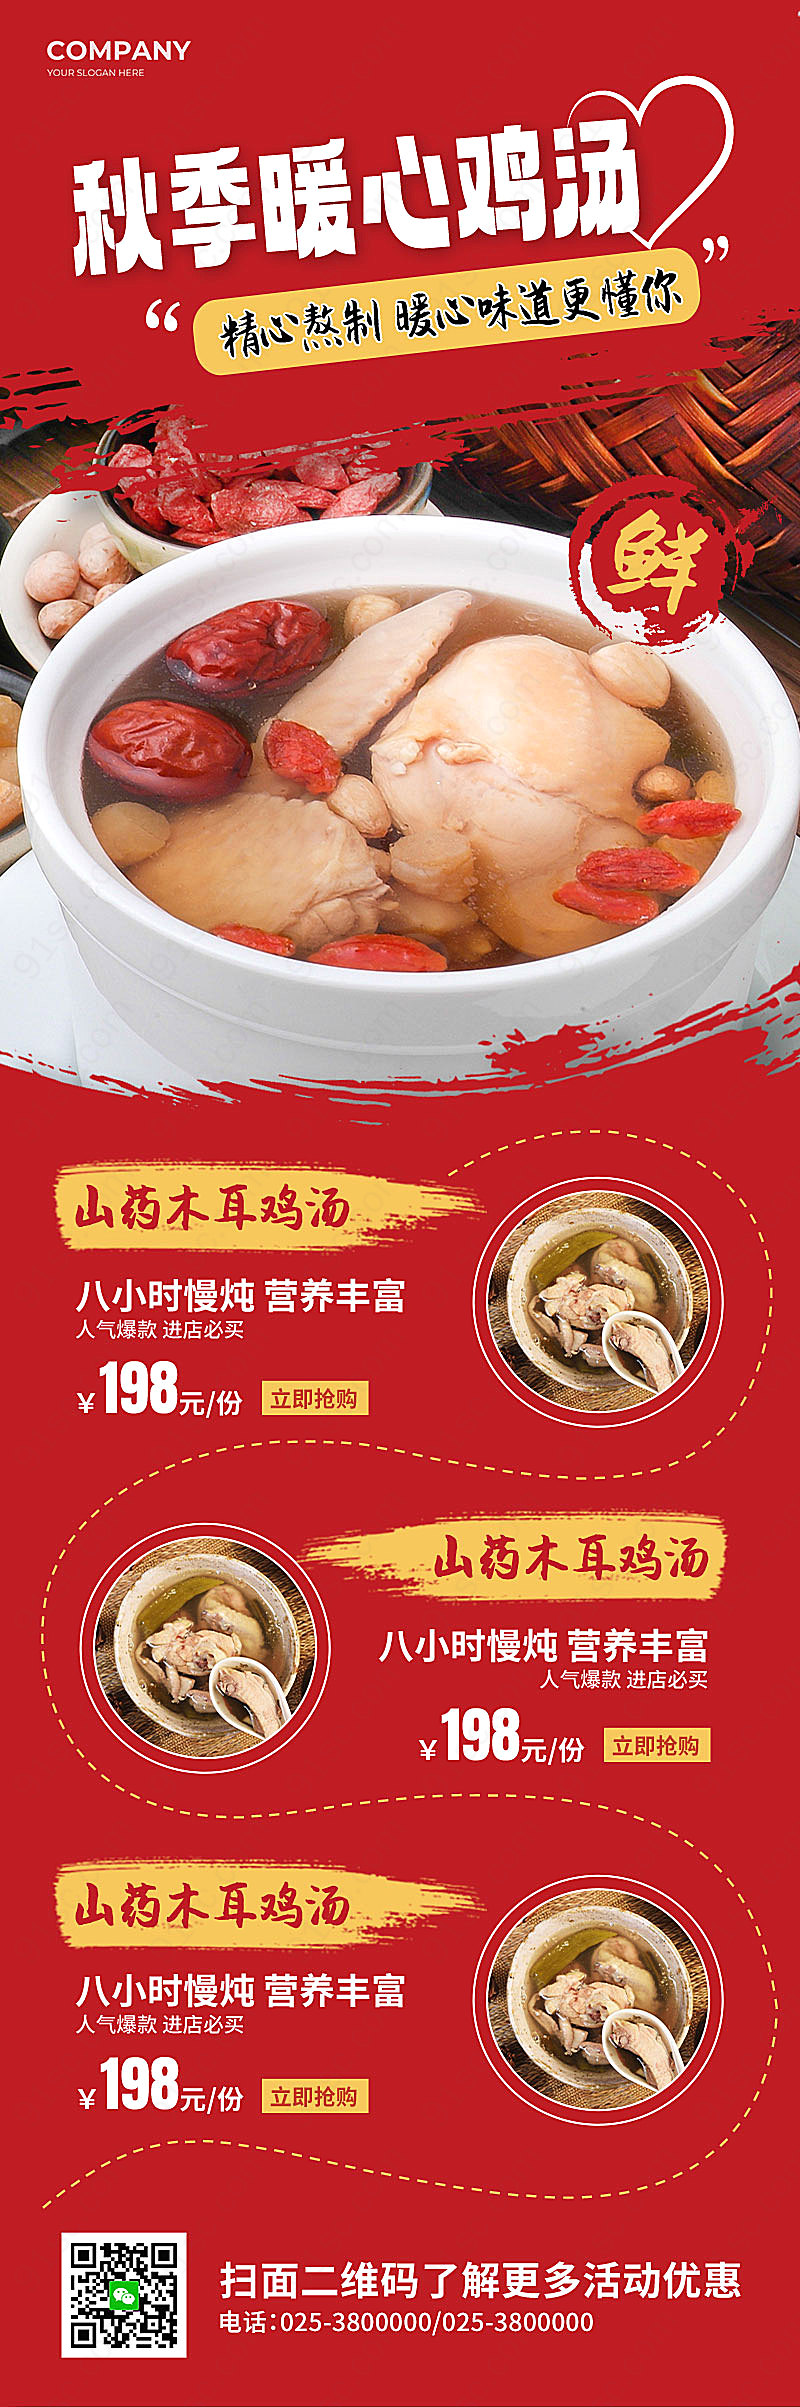 红色简约秋日鸡汤美食活动品尝温暖的味道新媒体用图下载